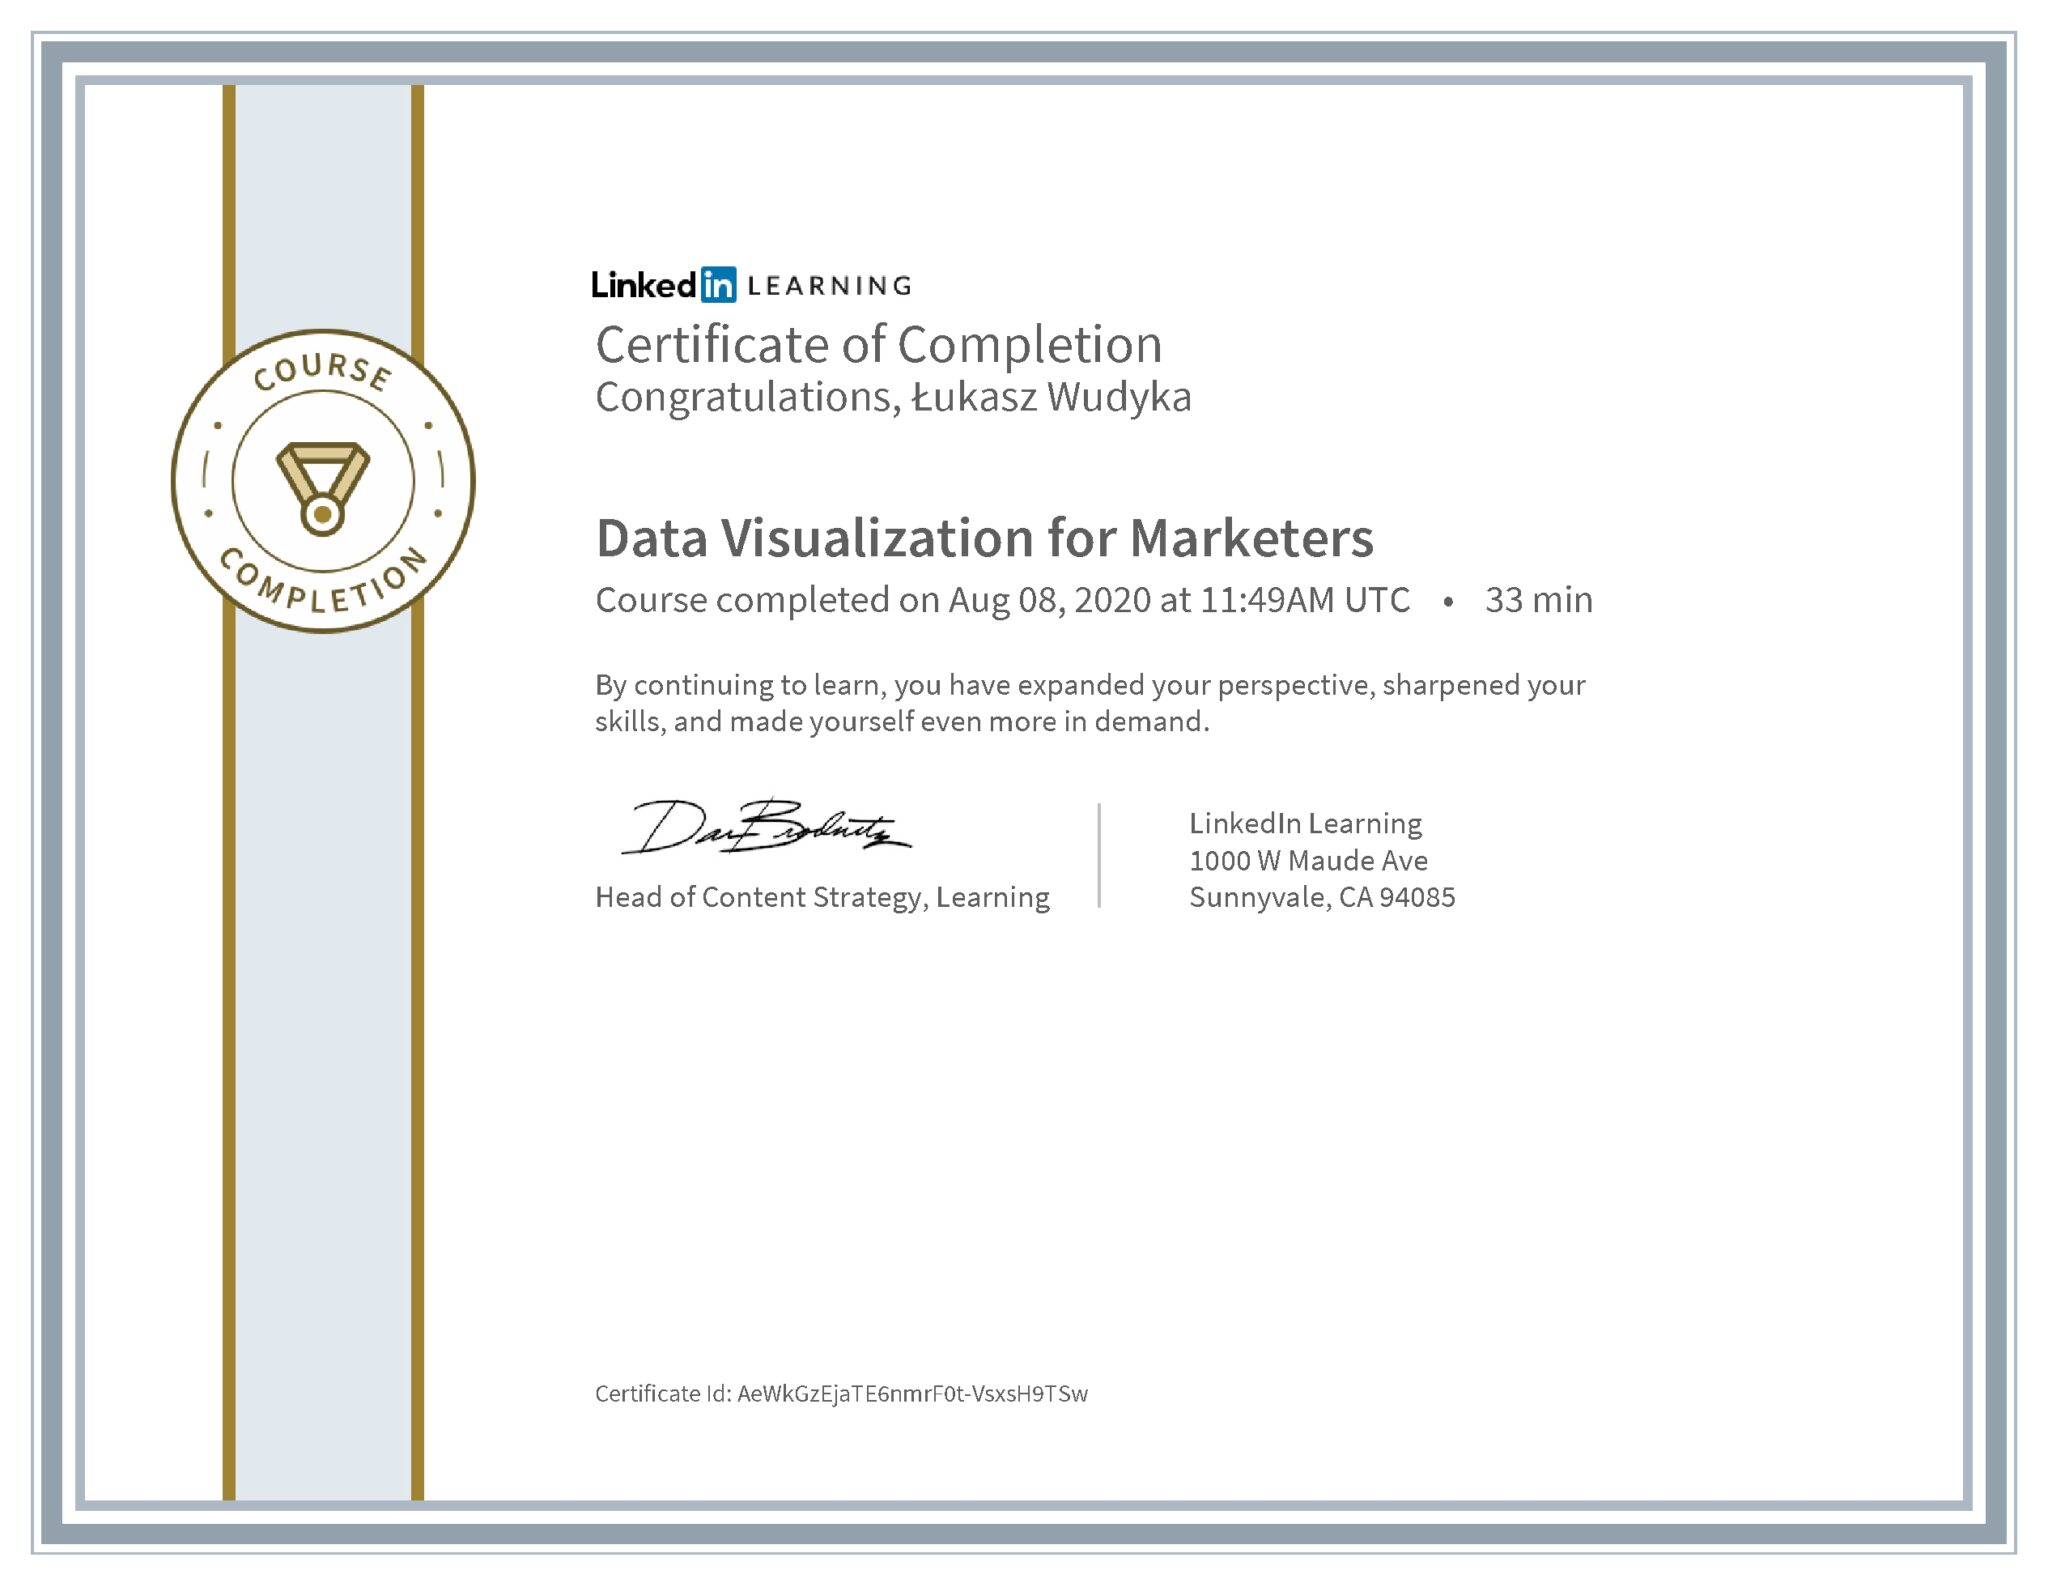 Łukasz Wudyka certyfikat LinkedIn Data Visualization for Marketers